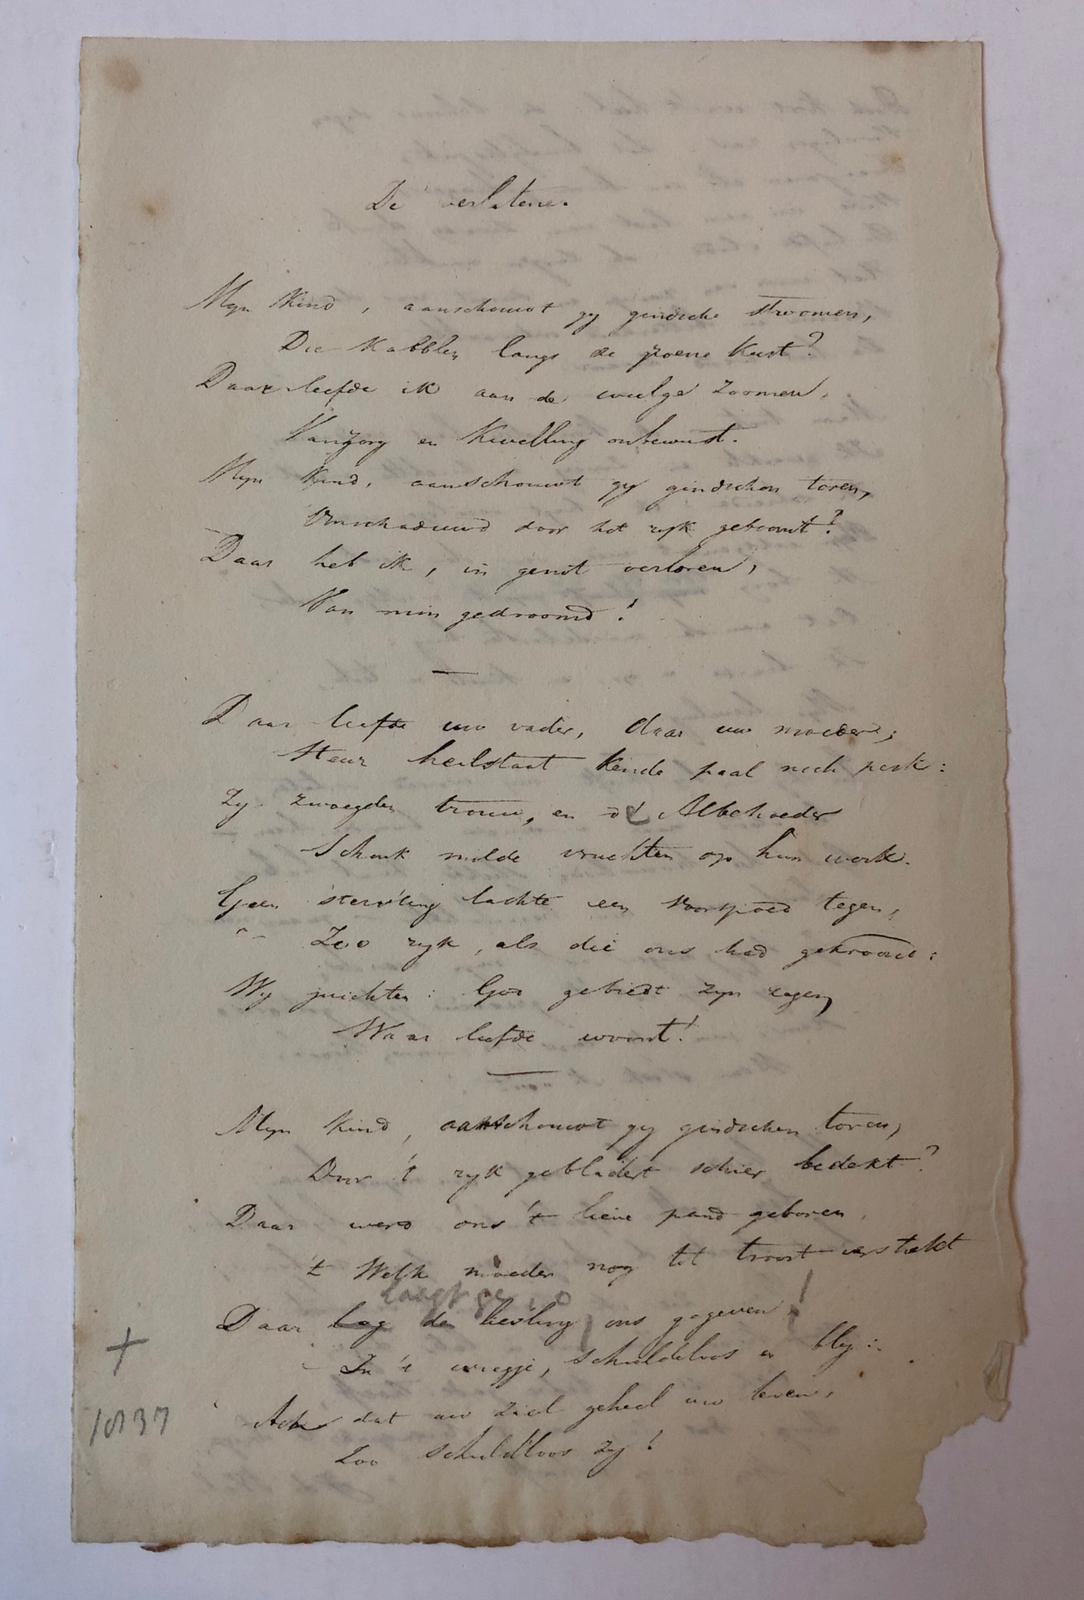 [MANUSCRIPT POEM, WAL, DE] Eigenhandig geschreven gedicht `De verlatene' door J. de Wal, ca. 1835. 8(: 2 p.